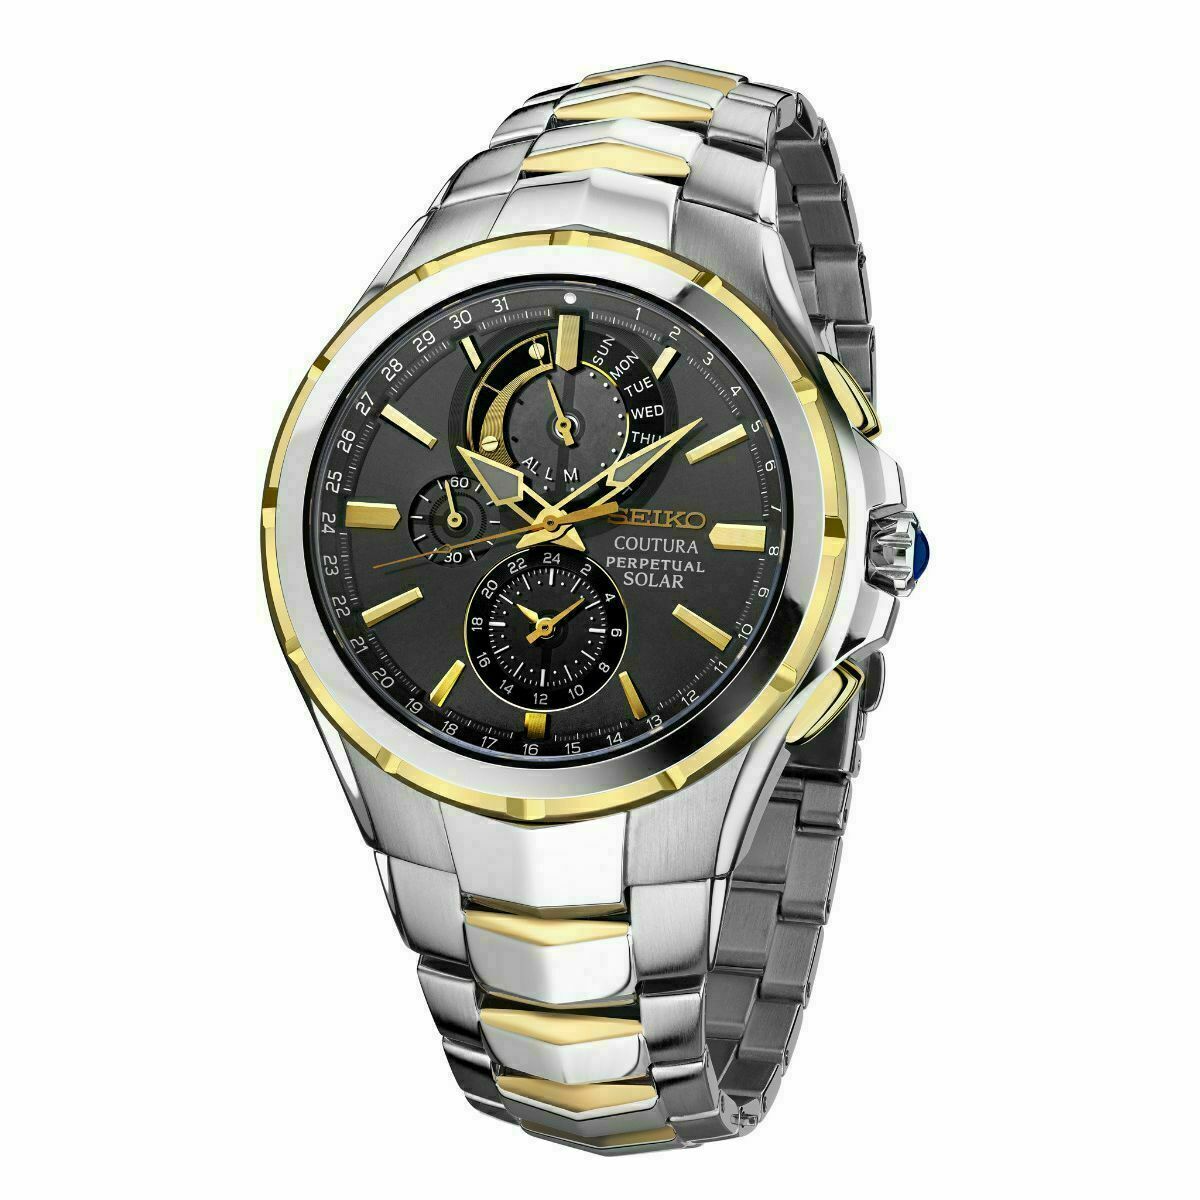 Seiko Men's Solar Coutura Perpetual Chronograph Two Tone Watch SSC376 –  Elegant Watches Jacksonville Florida